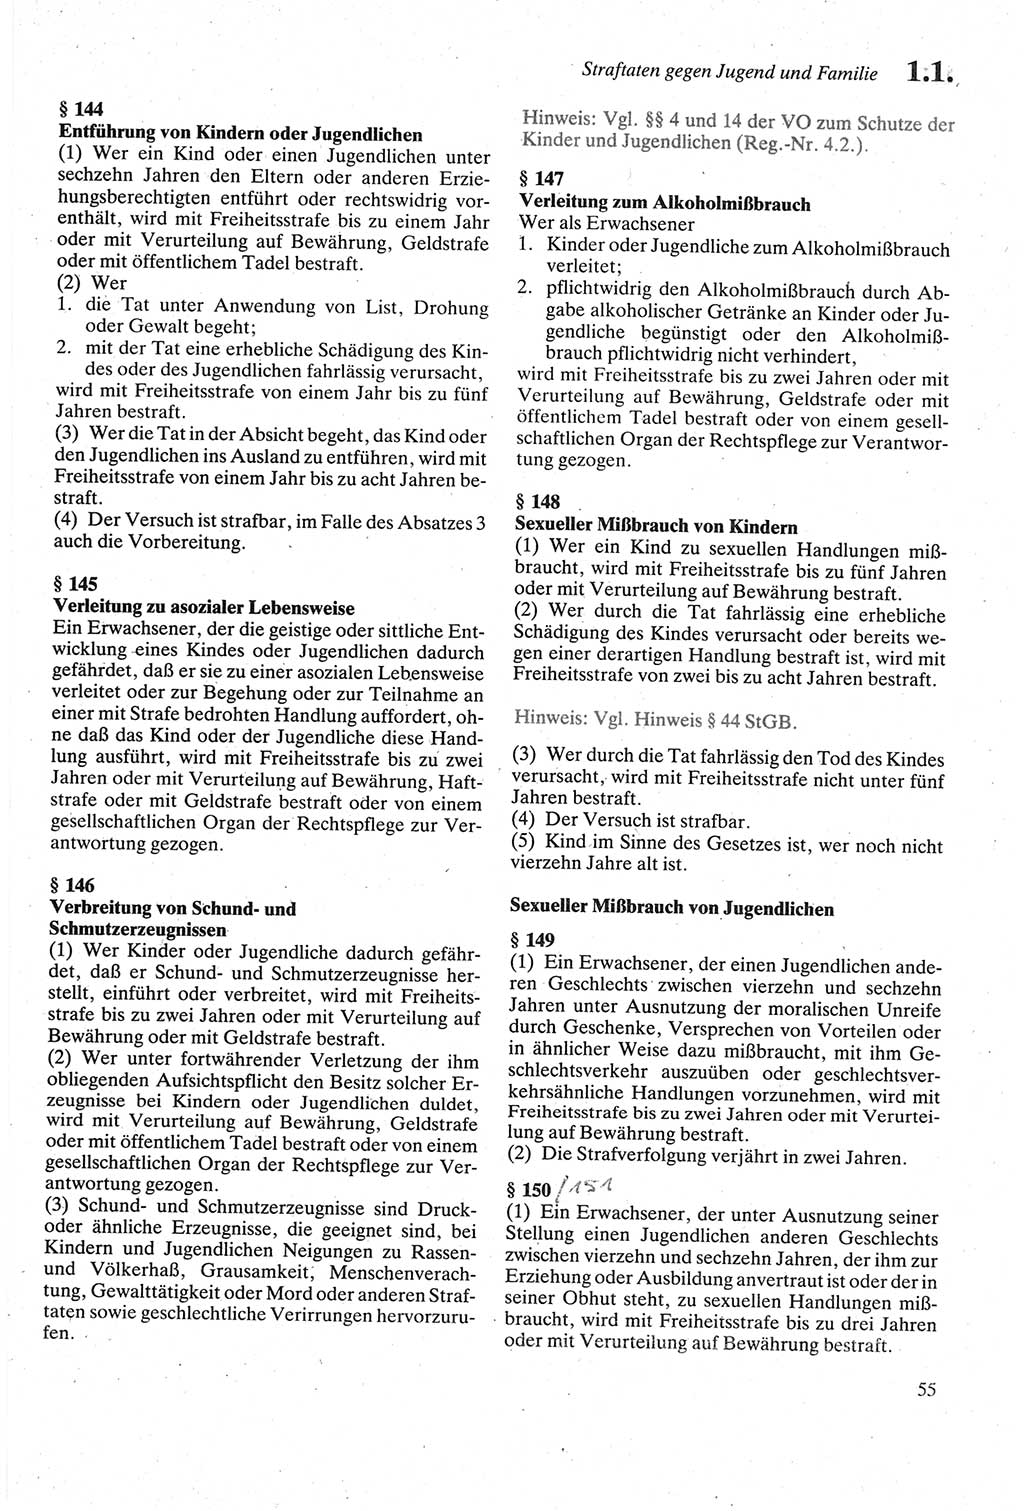 Strafgesetzbuch (StGB) der Deutschen Demokratischen Republik (DDR) sowie angrenzende Gesetze und Bestimmungen 1979, Seite 55 (StGB DDR Ges. Best. 1979, S. 55)